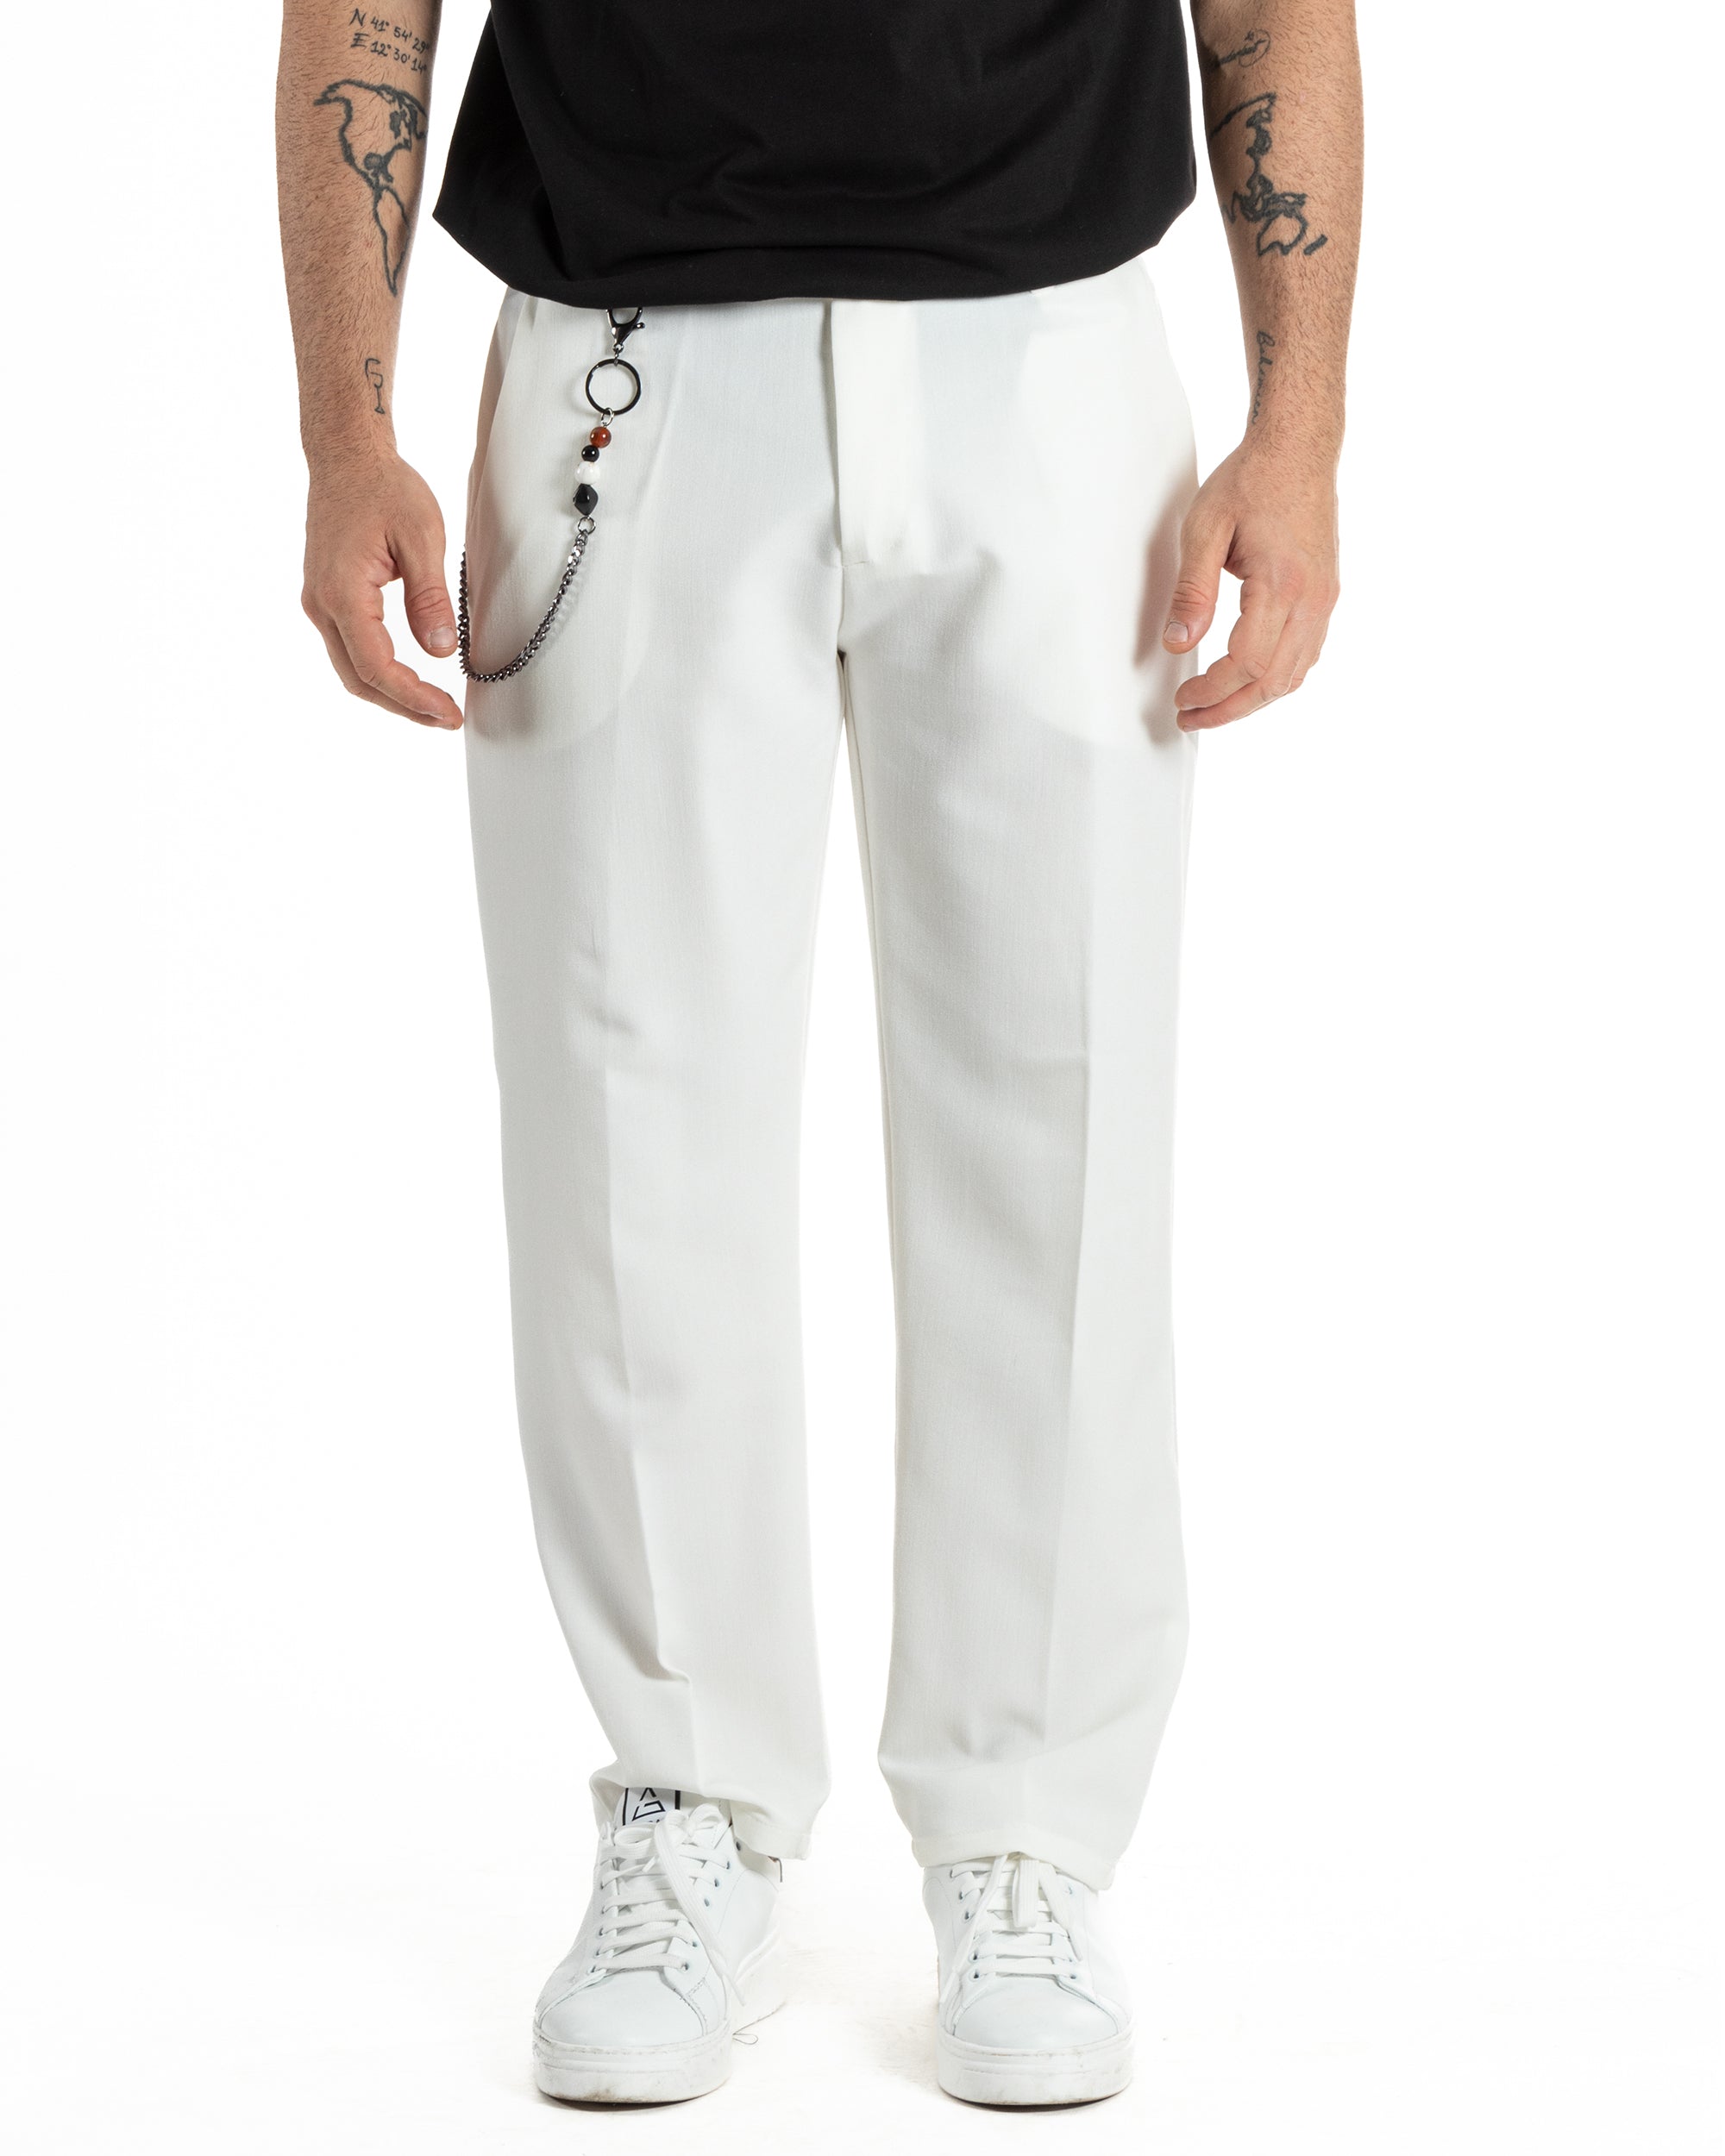 Pantaloni Uomo Viscosa Baggy Fondo Largo Tasca America Abbottonatura Allungata Casual Bianco GIOSAL-P6000A